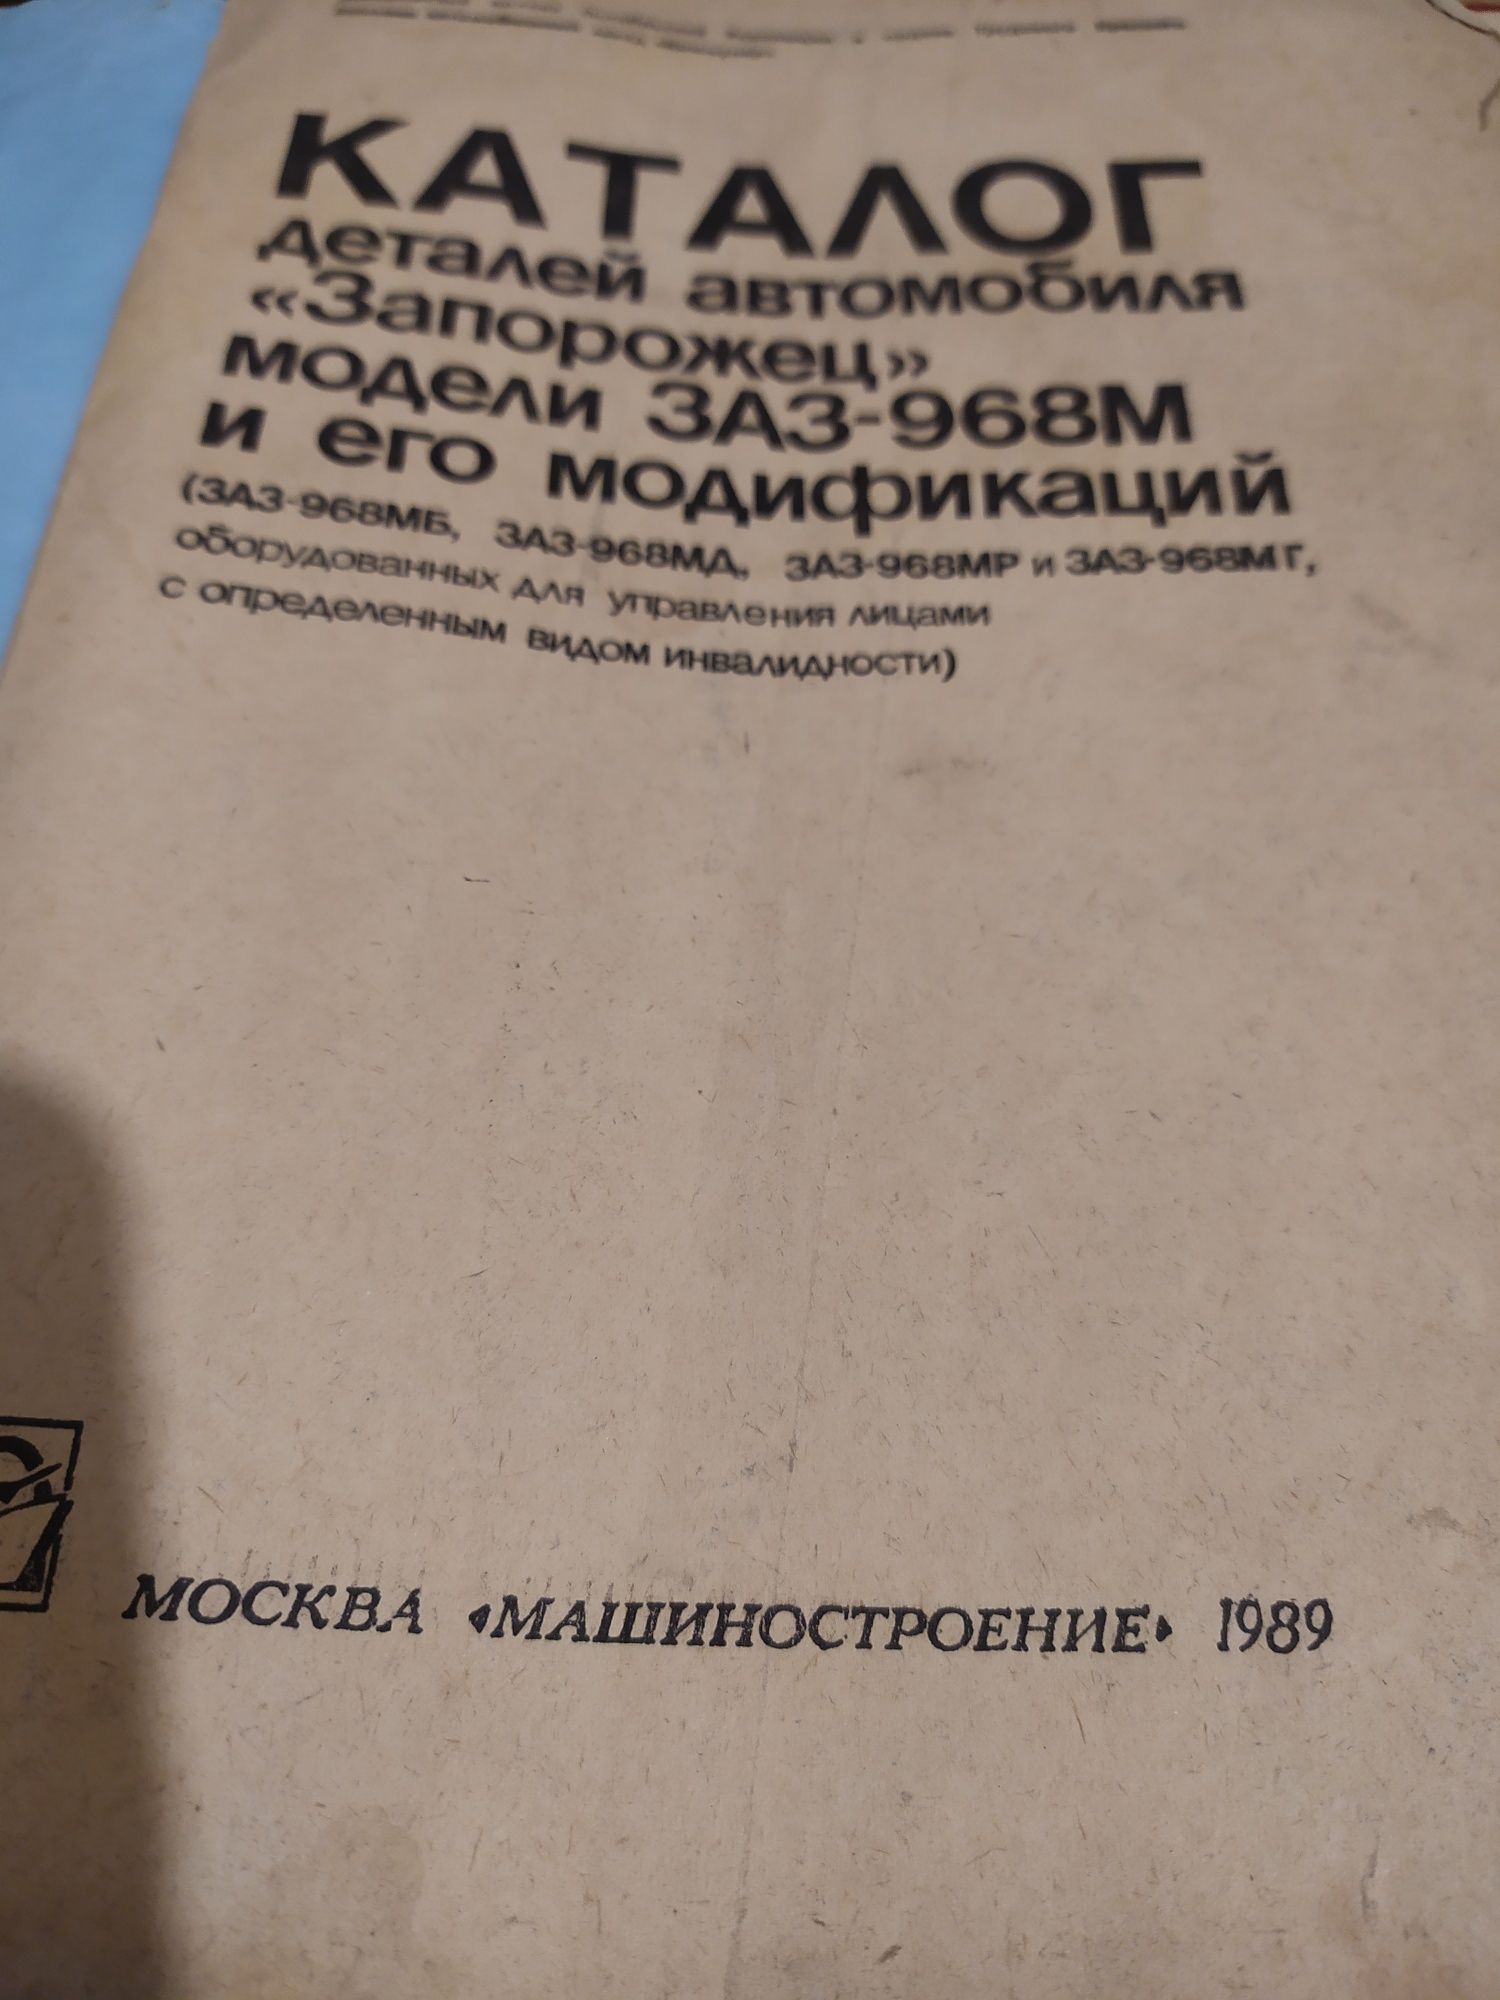 Книга " Каталог деталей автомобіля" Запорожець " моделі ЗАЗ-968М і т.д